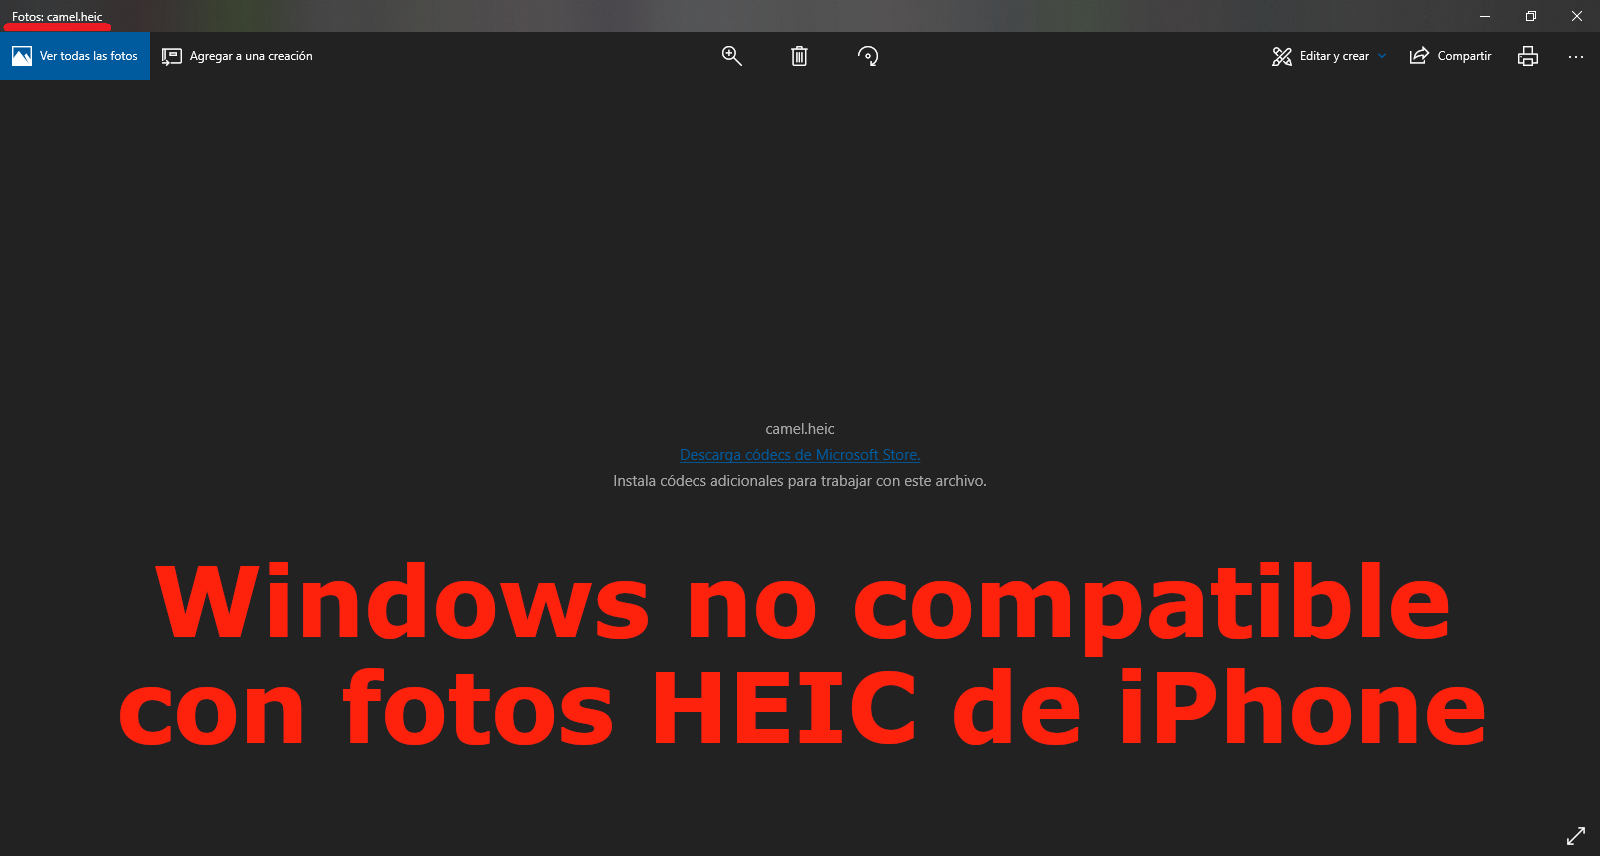 visualizar las fotos HEIC en windows 